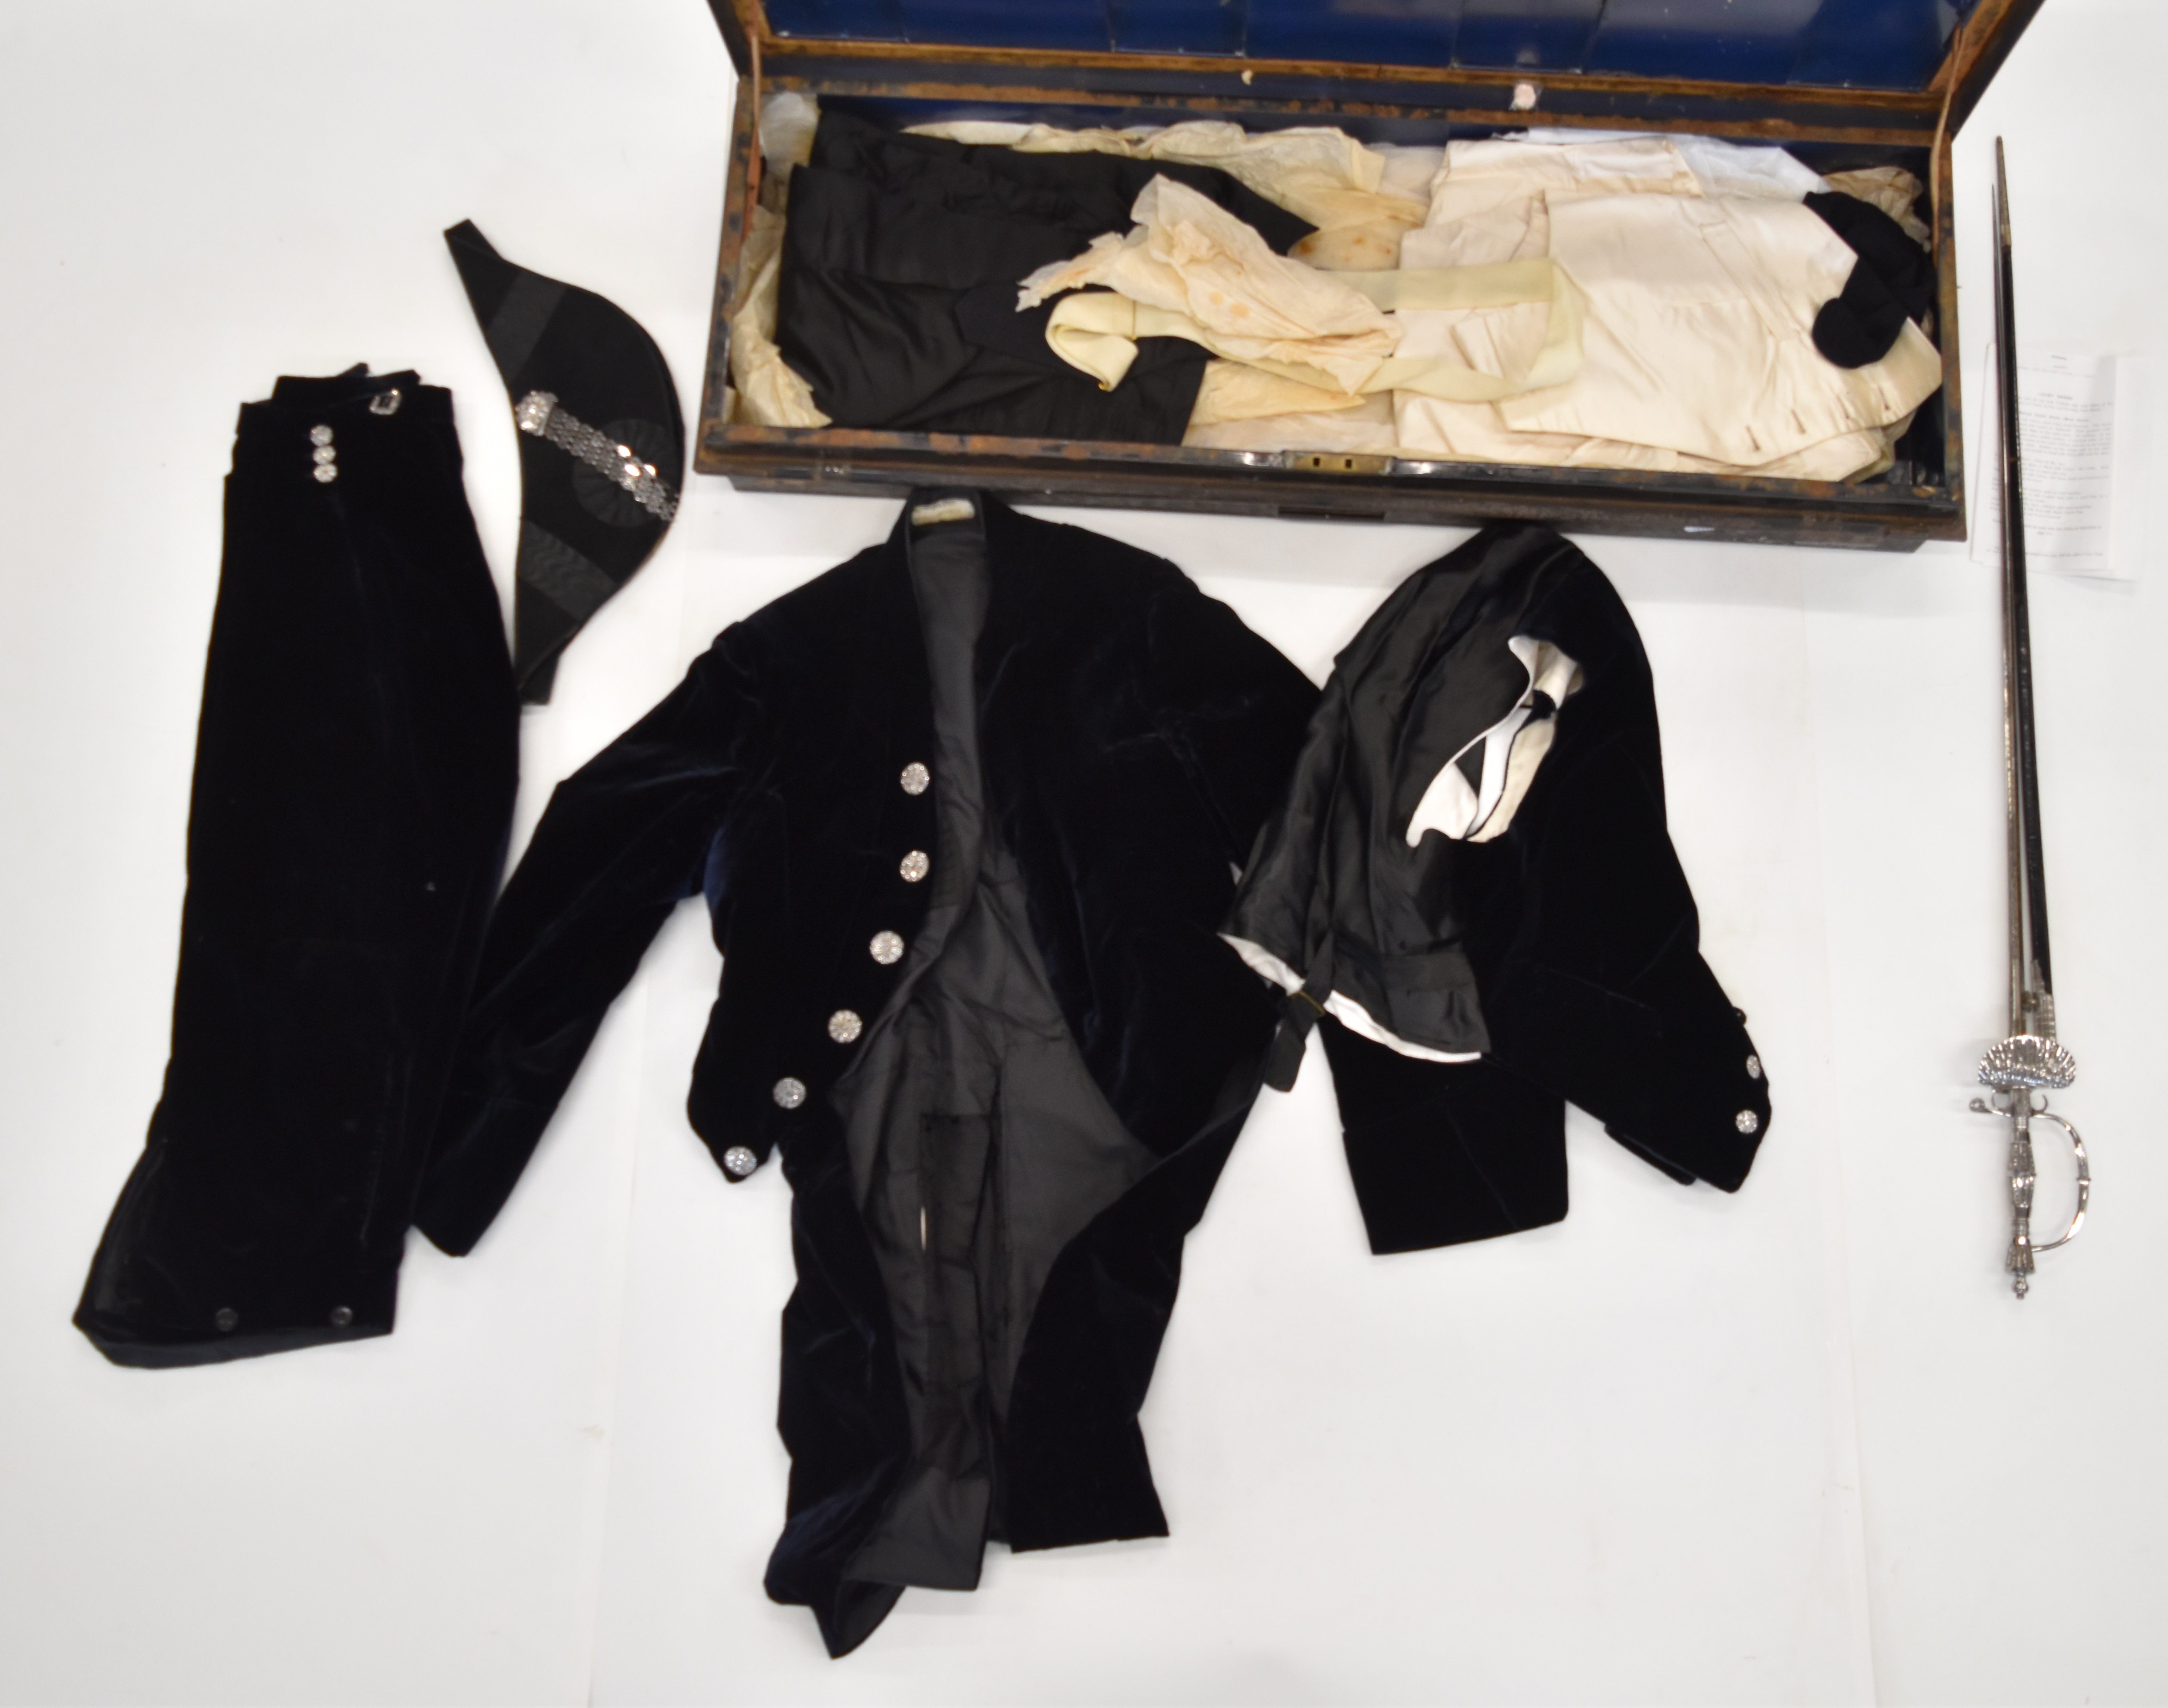 Early 20thC High Sheriff's uniform comprising black velvet coat, velvet breeches and waistcoat, - Image 12 of 20